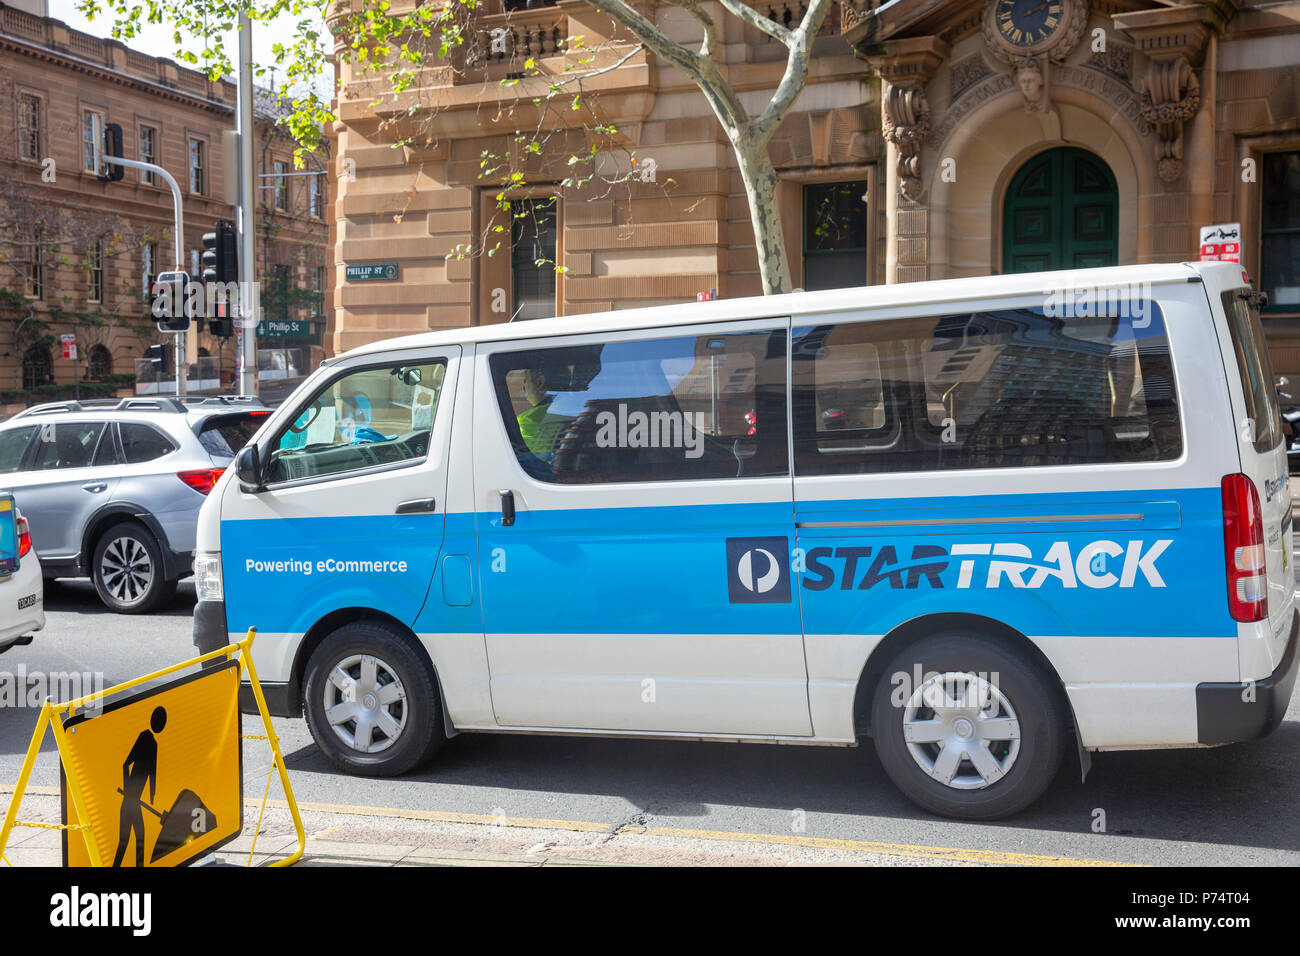 L'Australia Post Startrack véhicule de livraison de colis à Sydney, Australie Banque D'Images